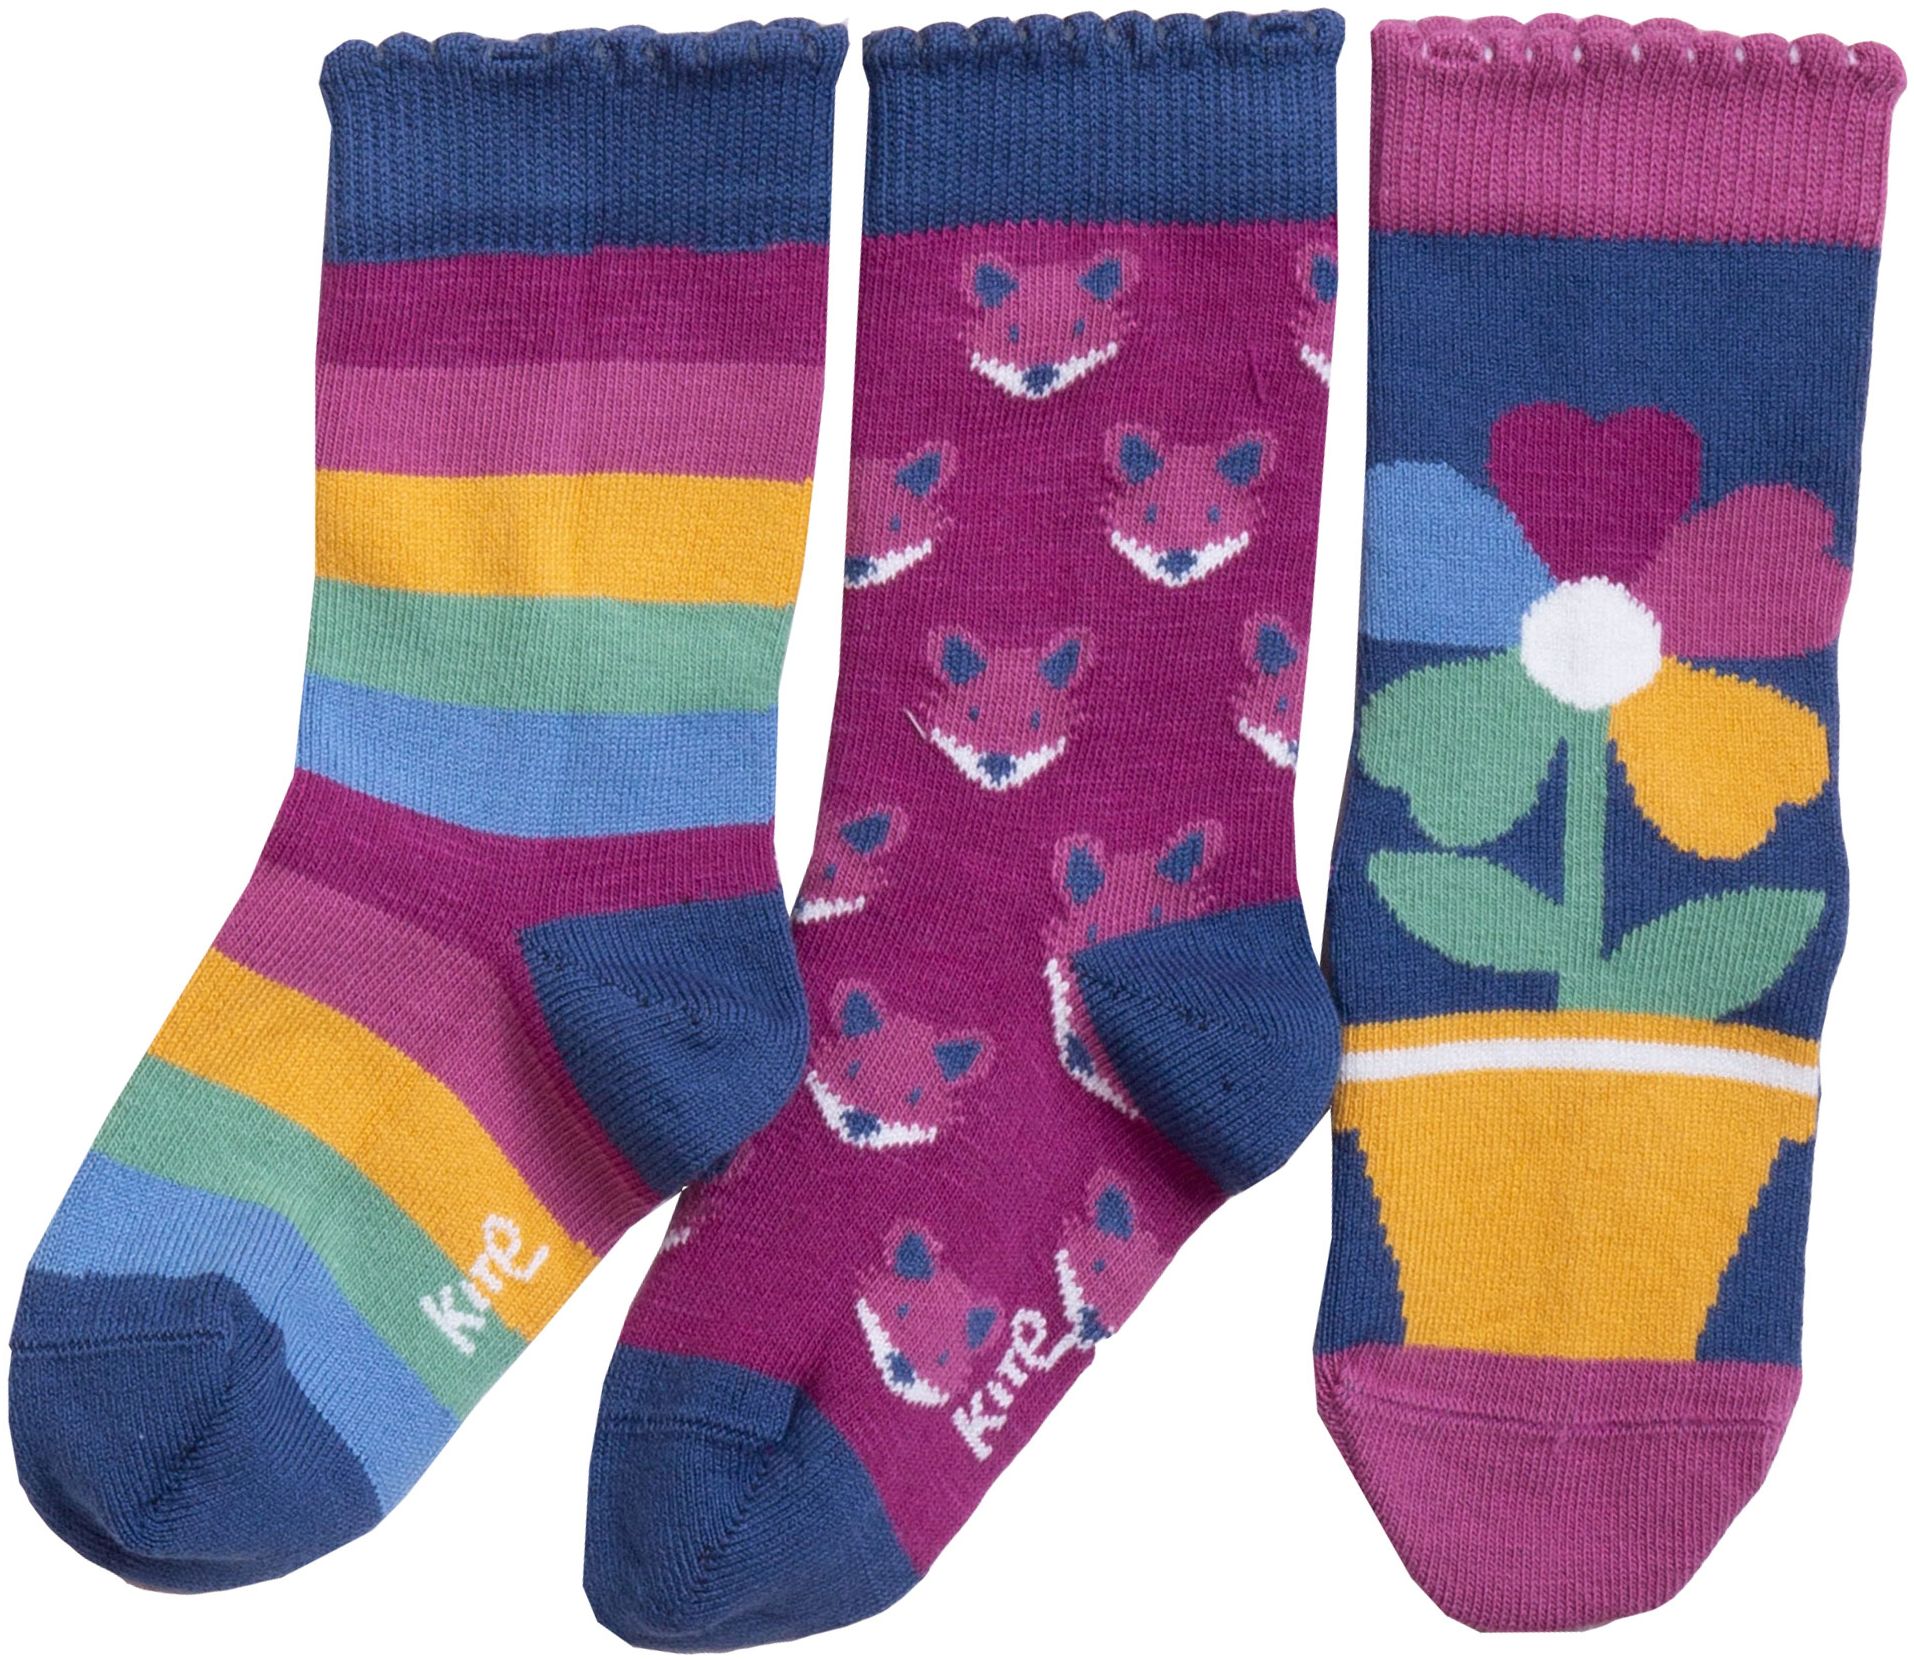 Bunt gemusterte Kinder-Socken im 3er-Pack mit Füchsen